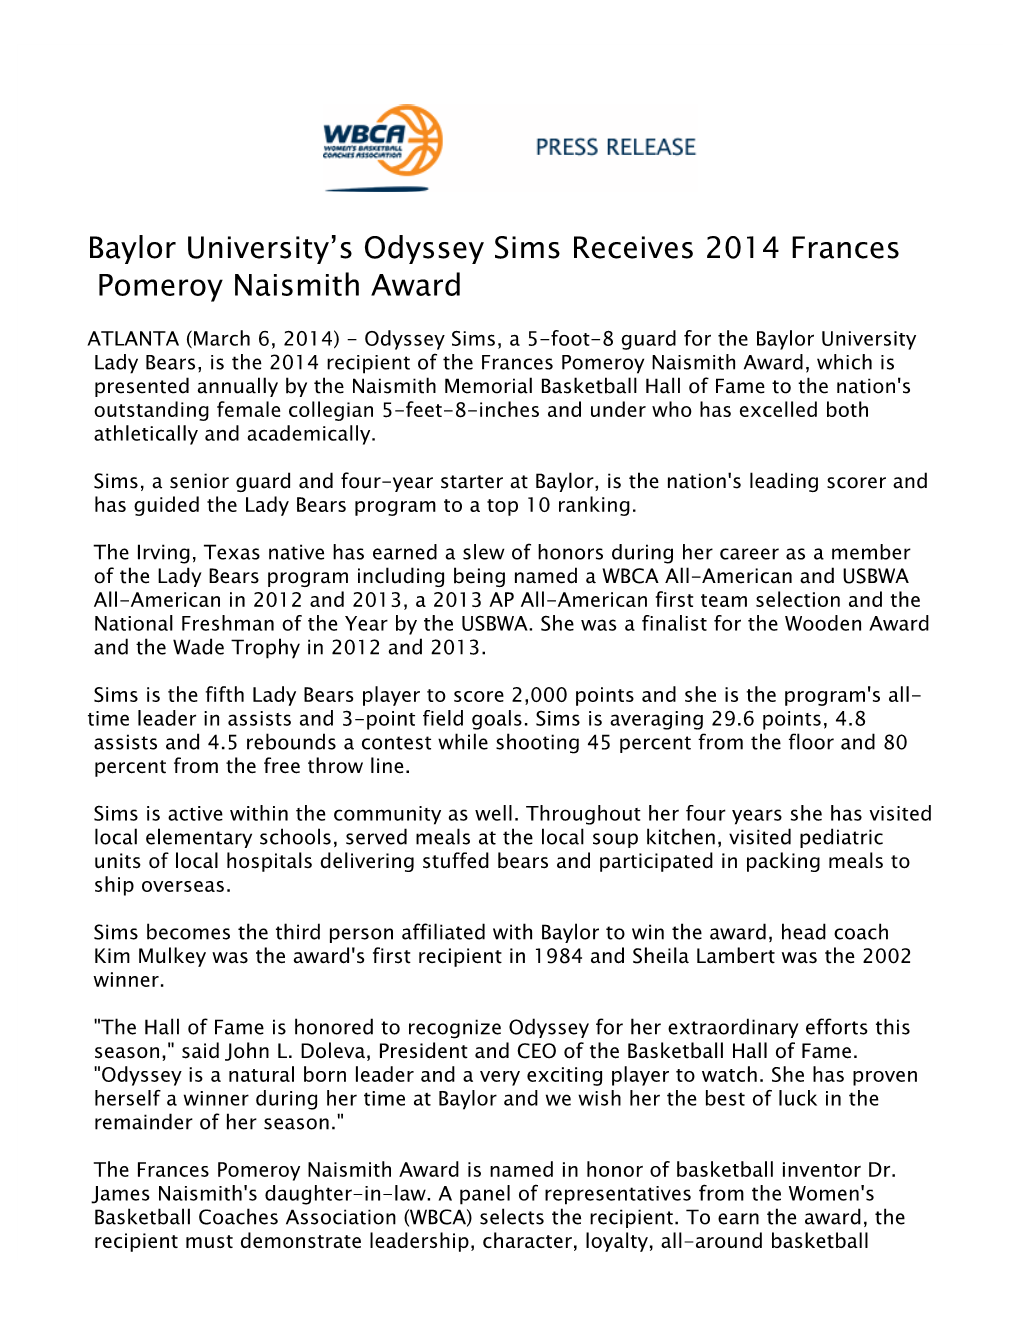 Baylor University's Odyssey Sims Receives 2014 Frances Pomeroy